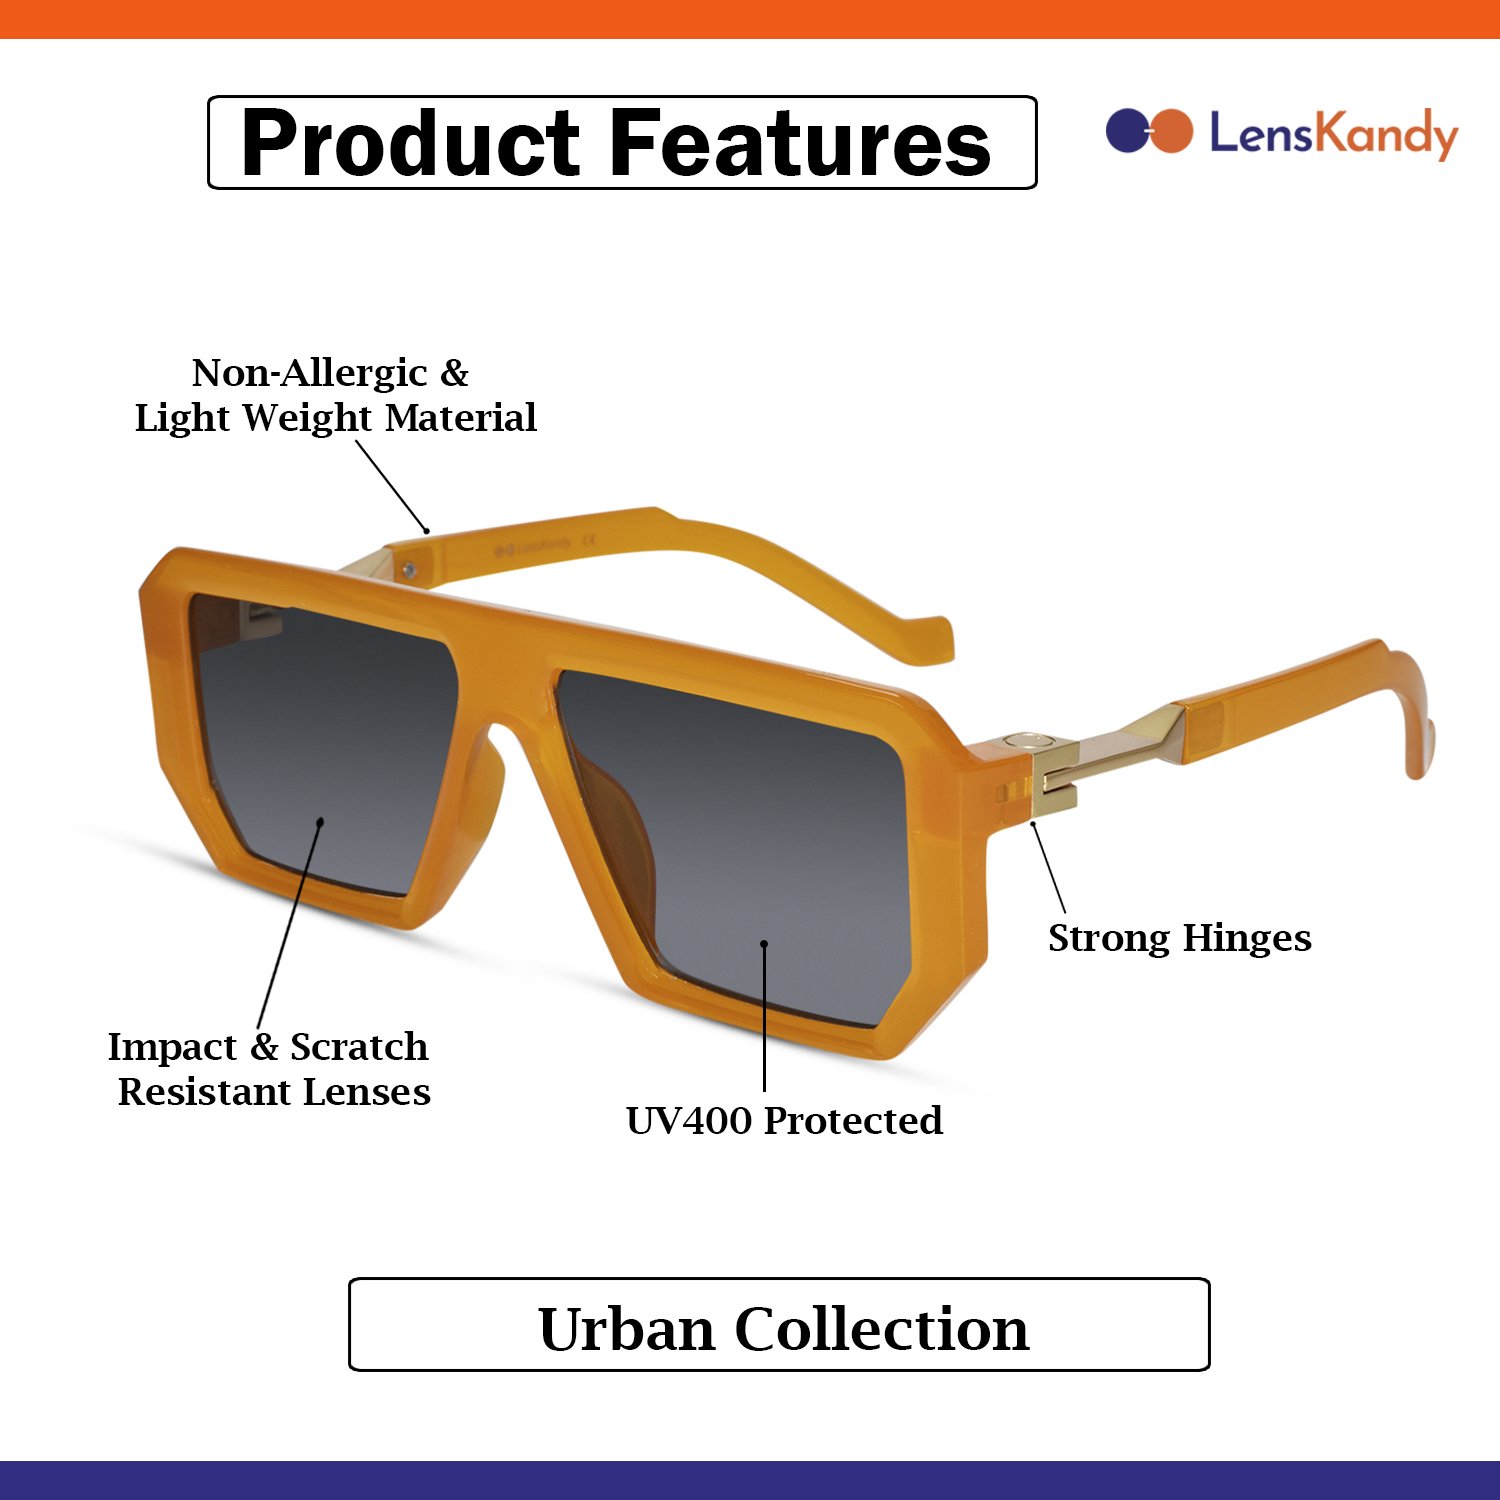 Designer Retro Orange Sunglasses